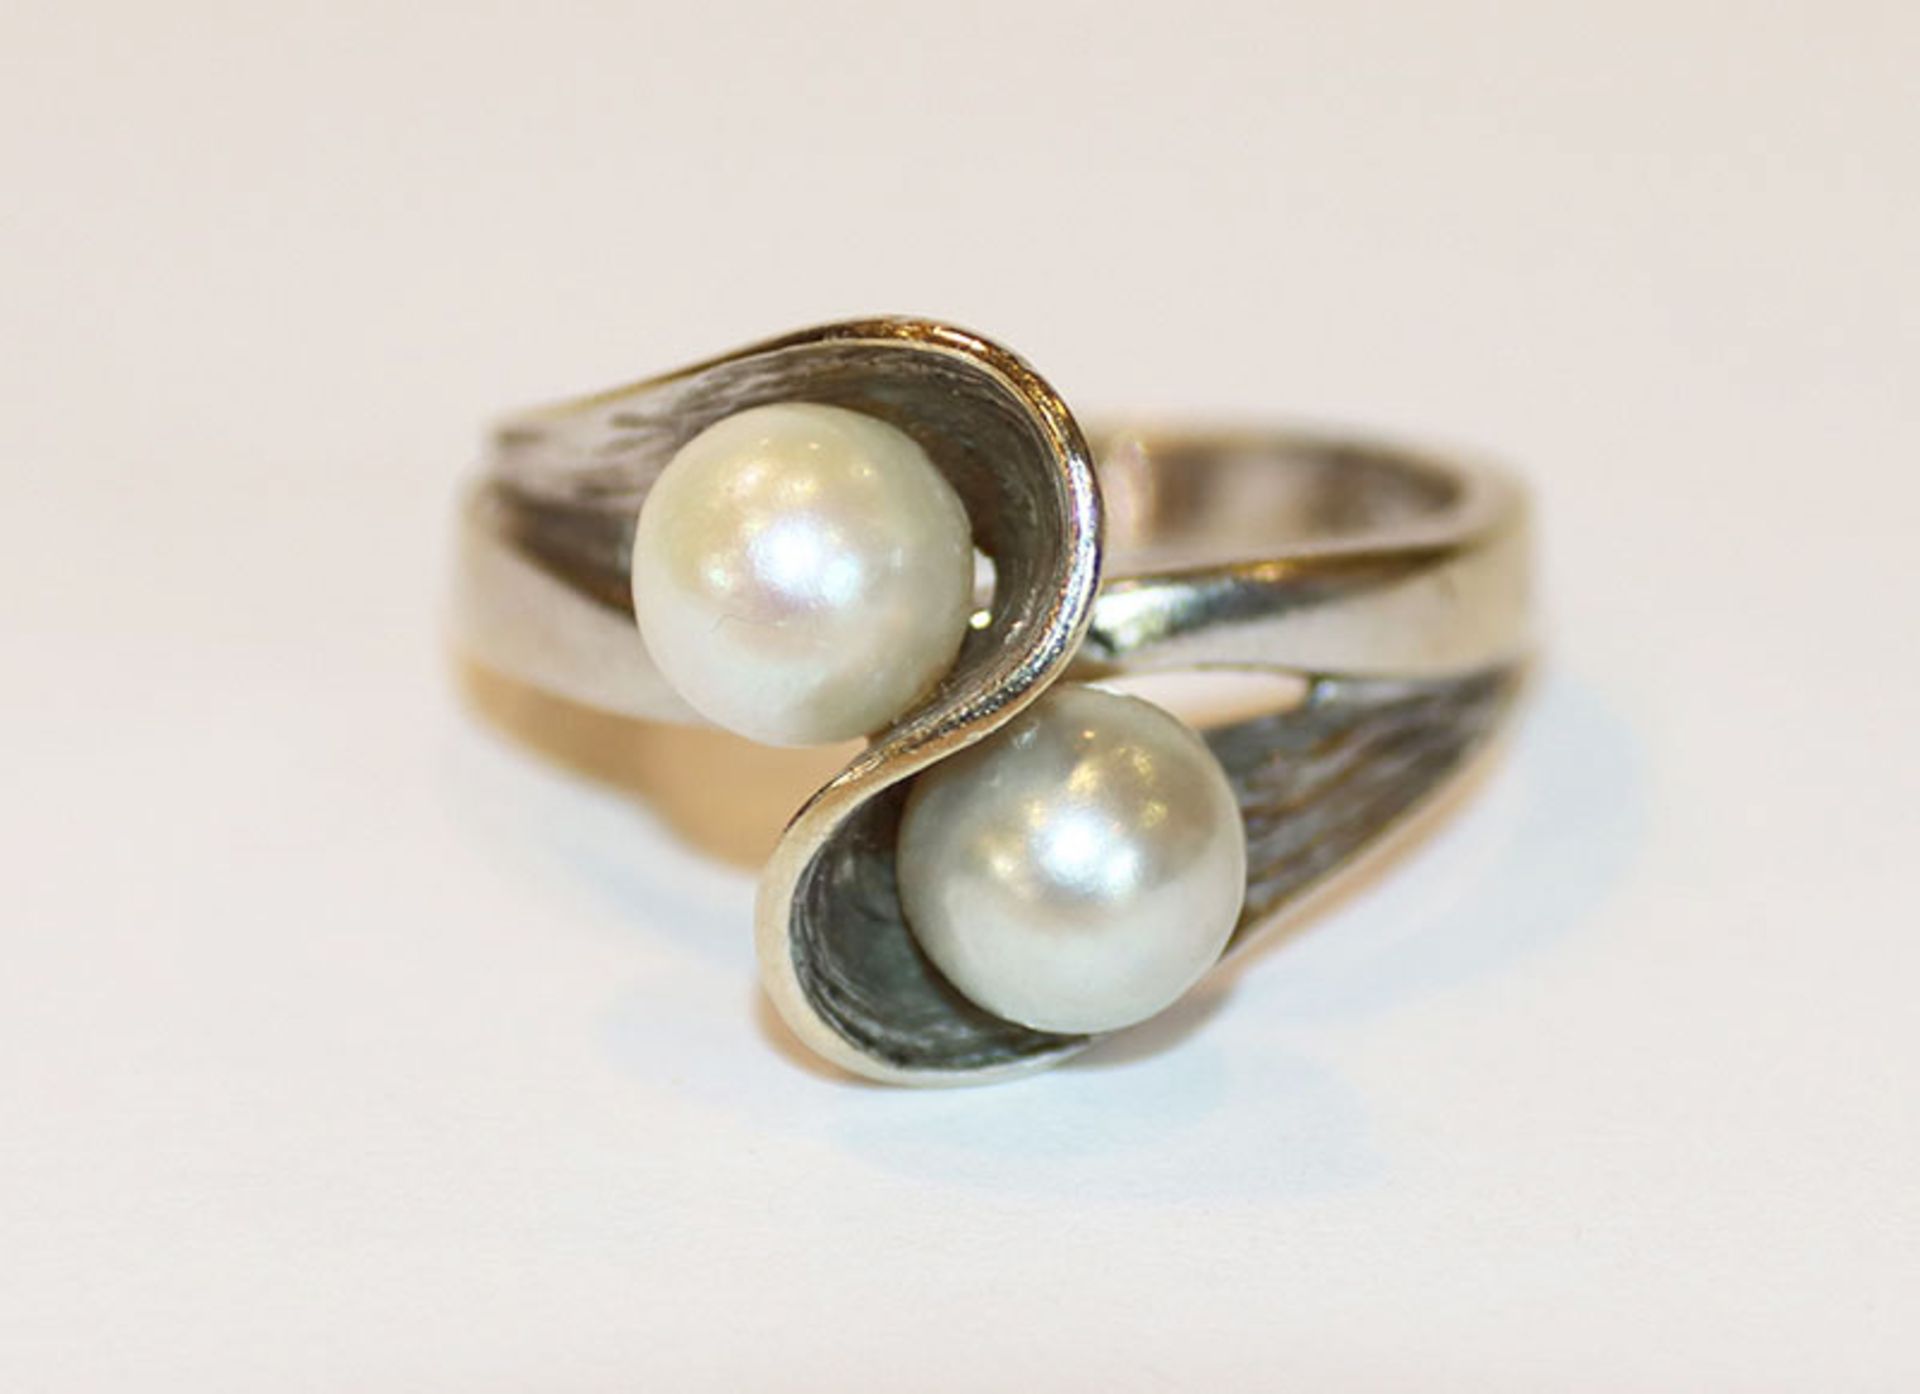 Ausgefallener 14 k Weißgold Ring, teils mattiert mit weißer und grauer Perle, Gr. 53, 4,8 gr.